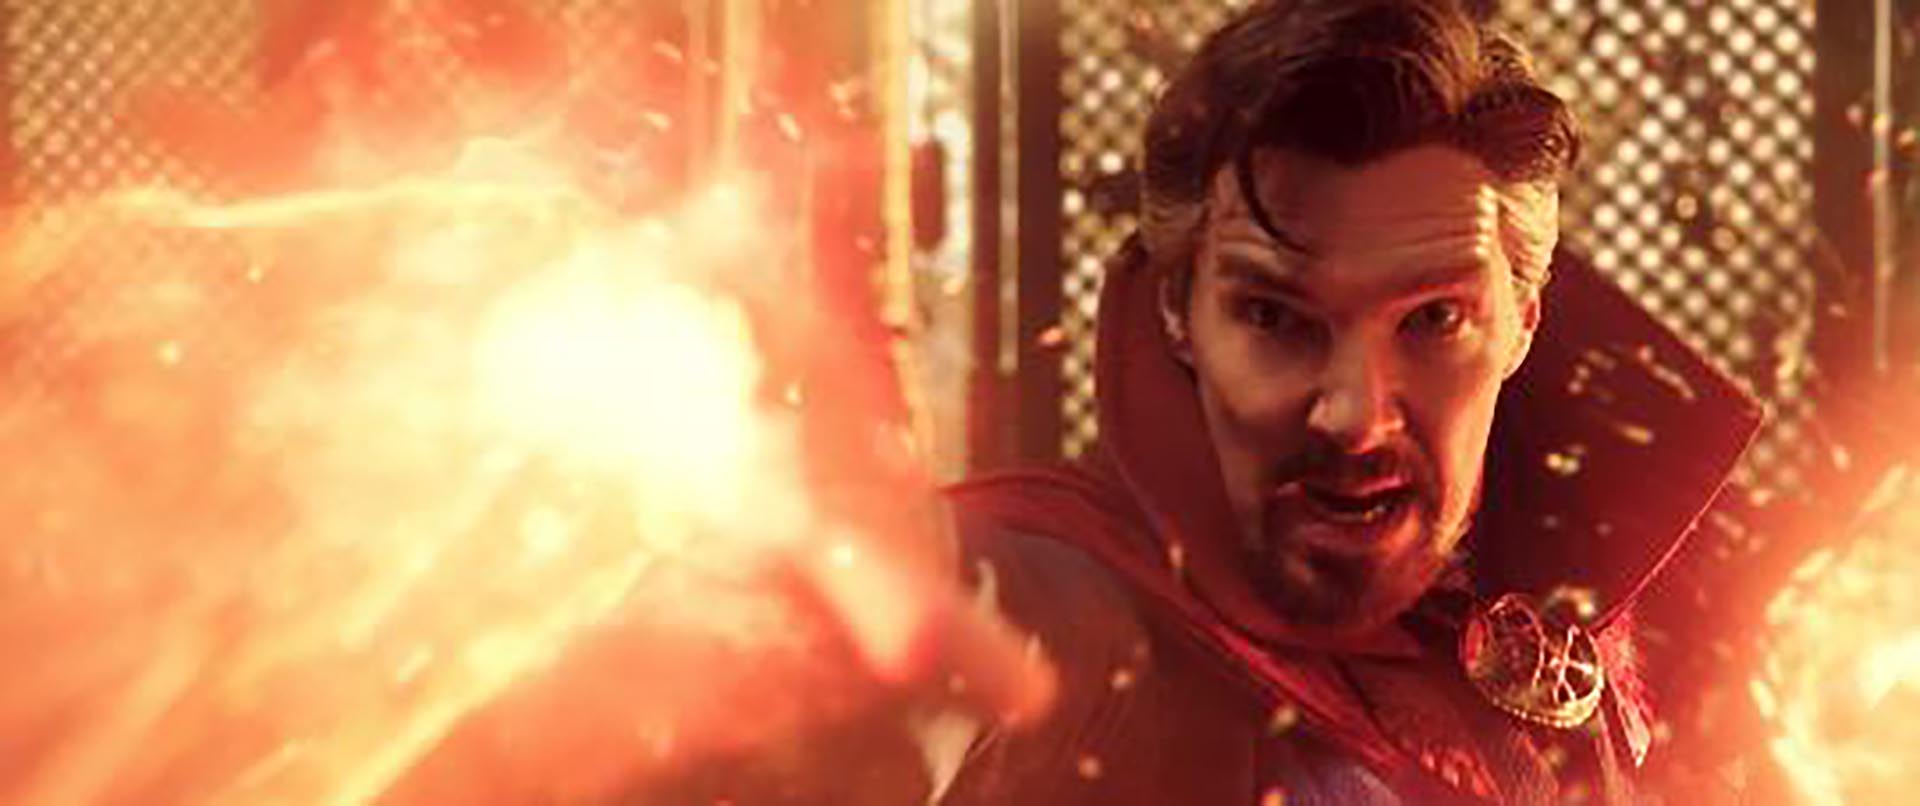 El actor Benedict Cumberbatch tuvo que interpretar varias versiones de Dr. Strange en el film.
(Marvel)